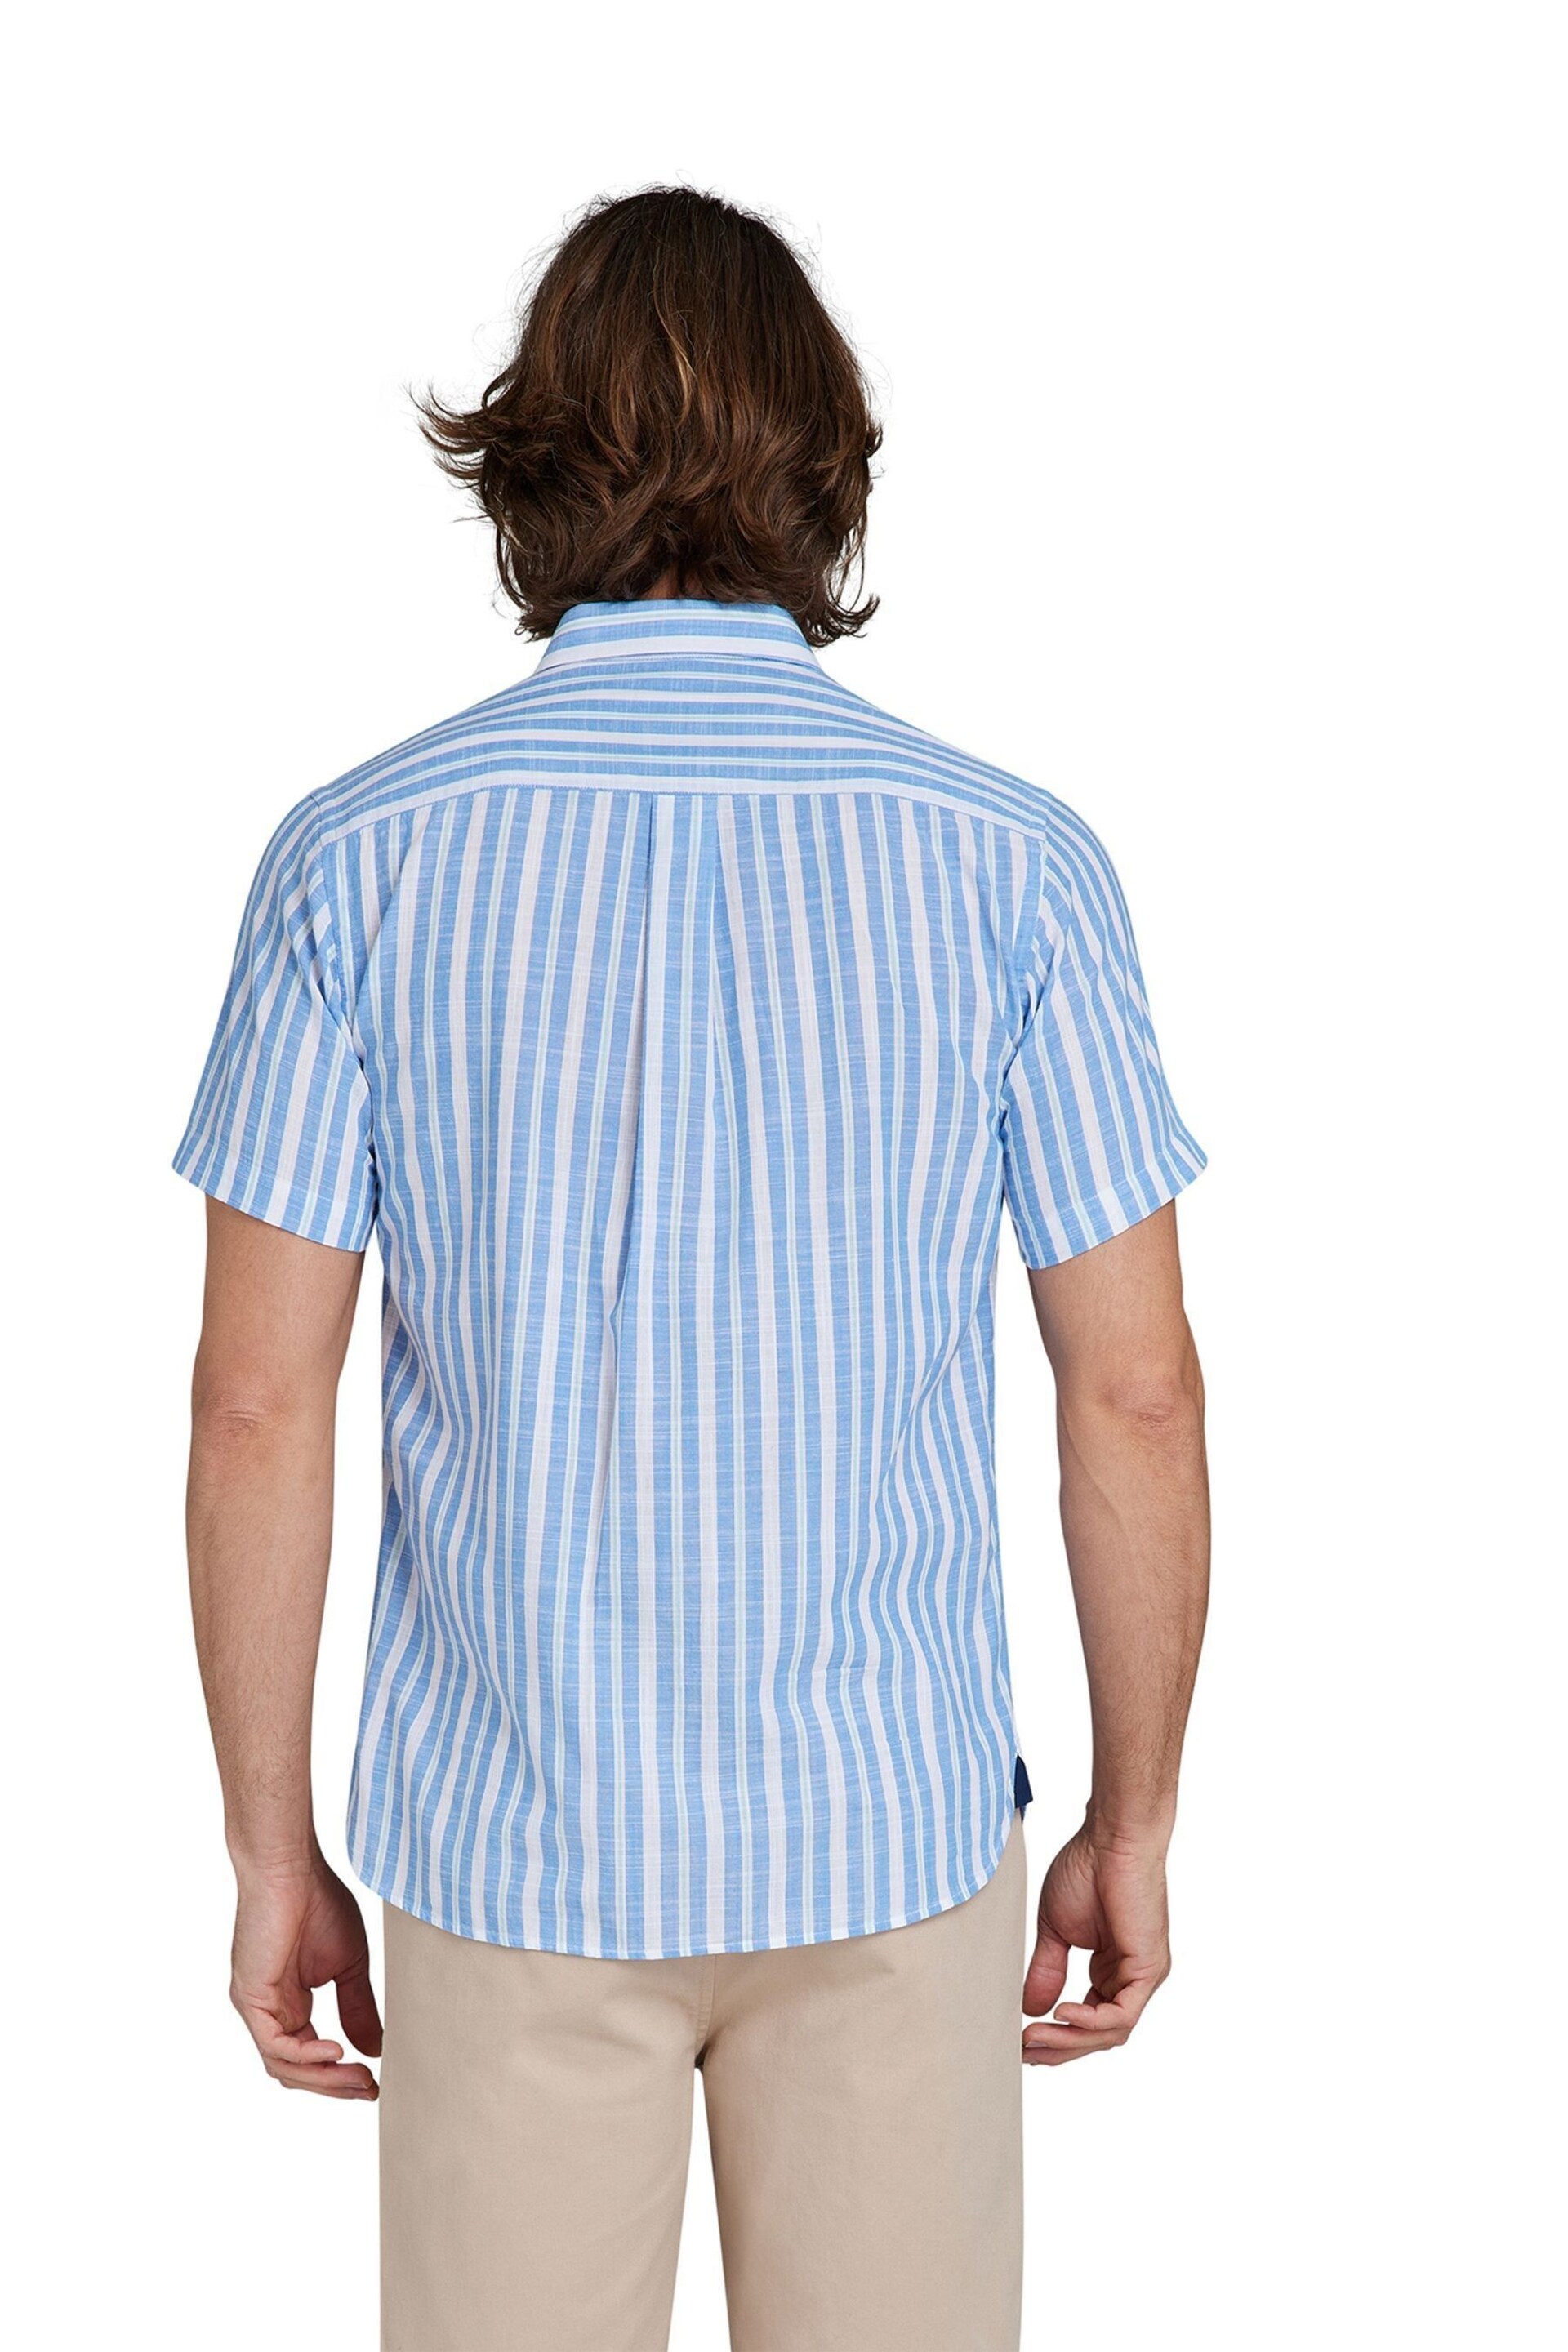 Raging Bull Blue Short Sleeve Multi Stripe Linen Look Shirt - Image 7 of 12